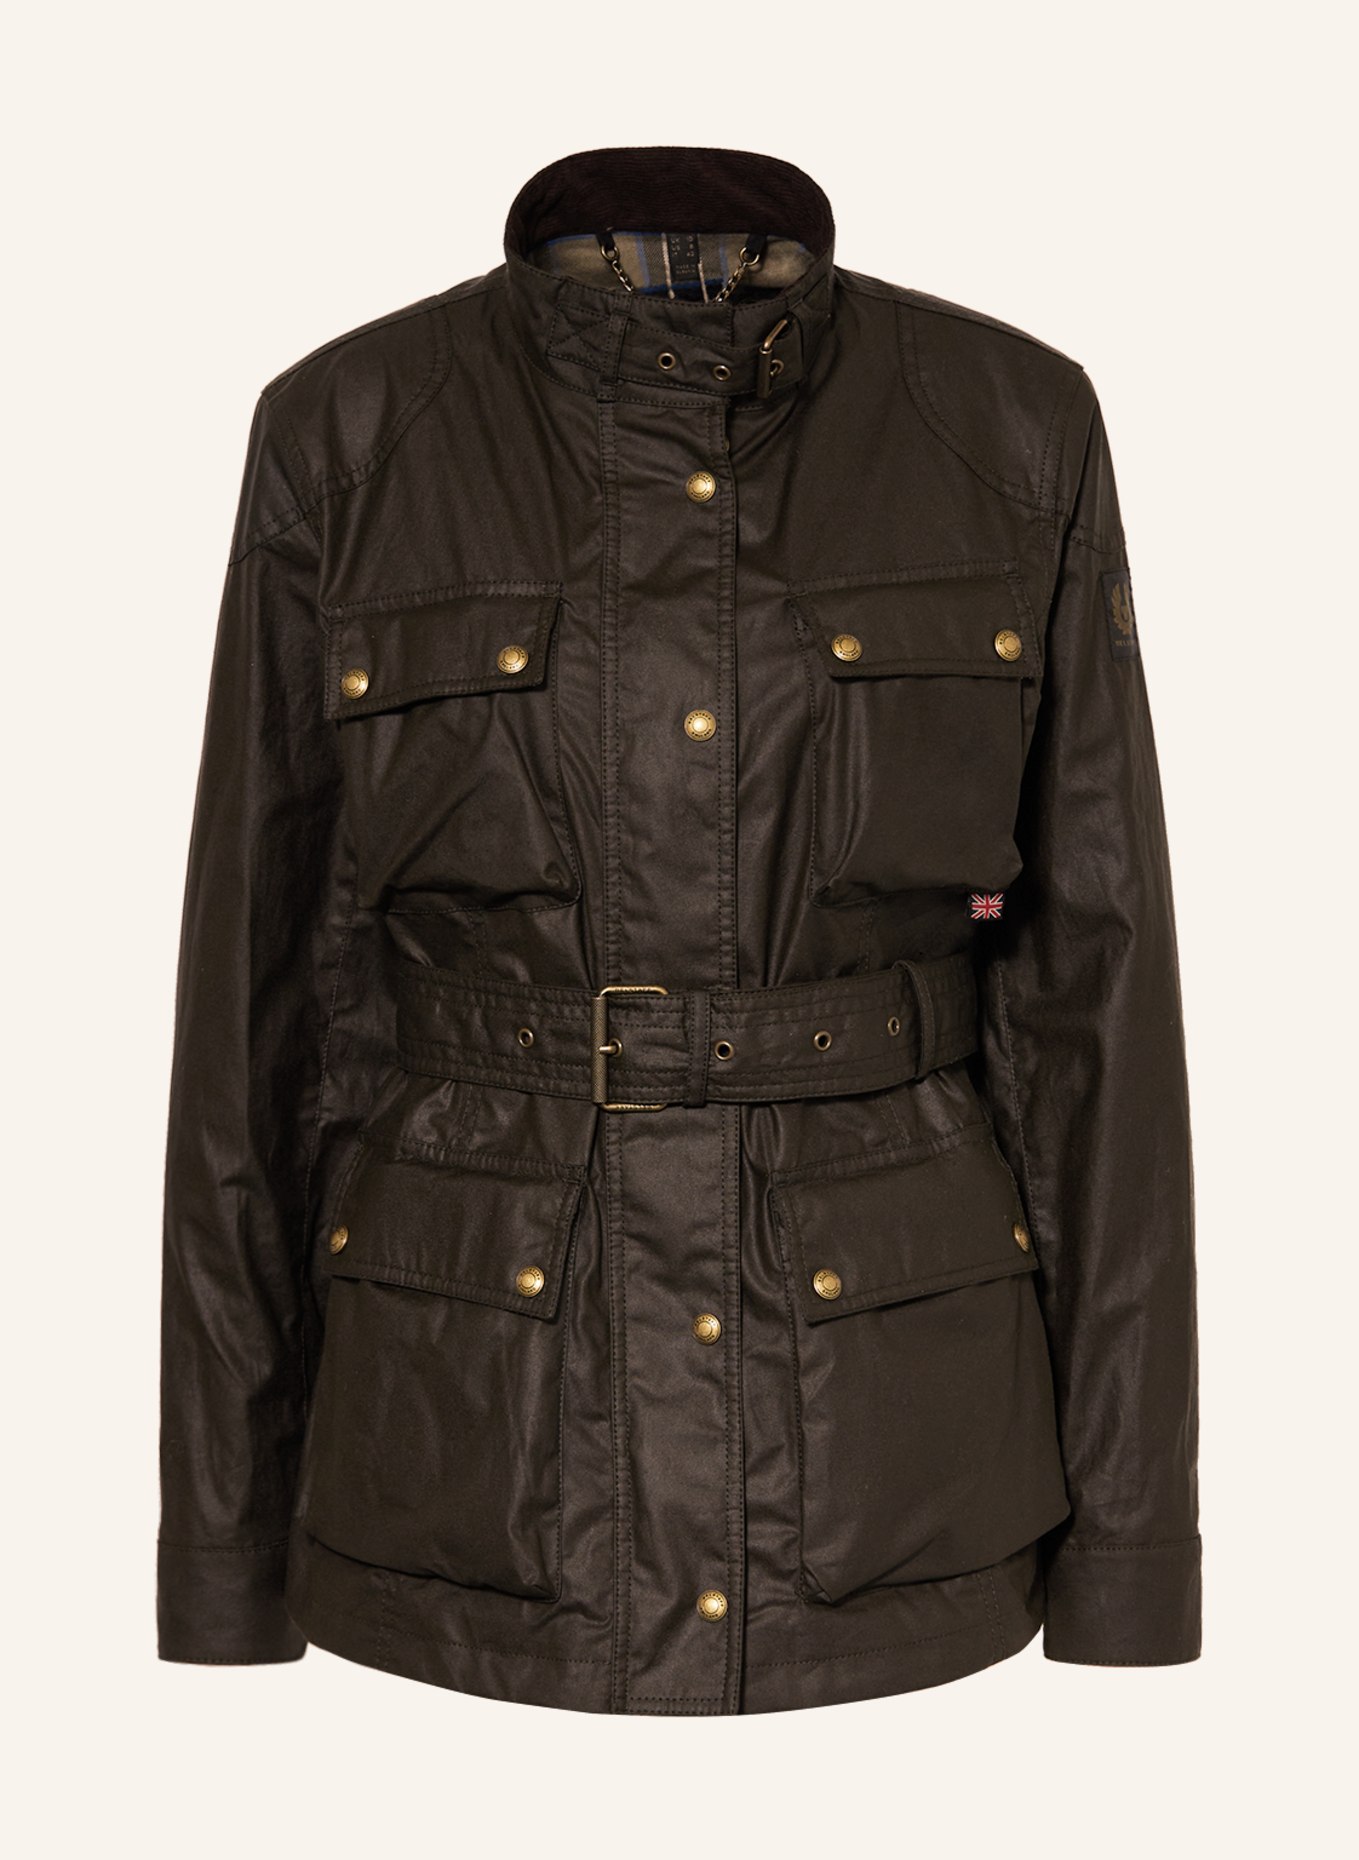 BELSTAFF Field jacket TRIALMASTER, Color: OLIVE (Image 1)